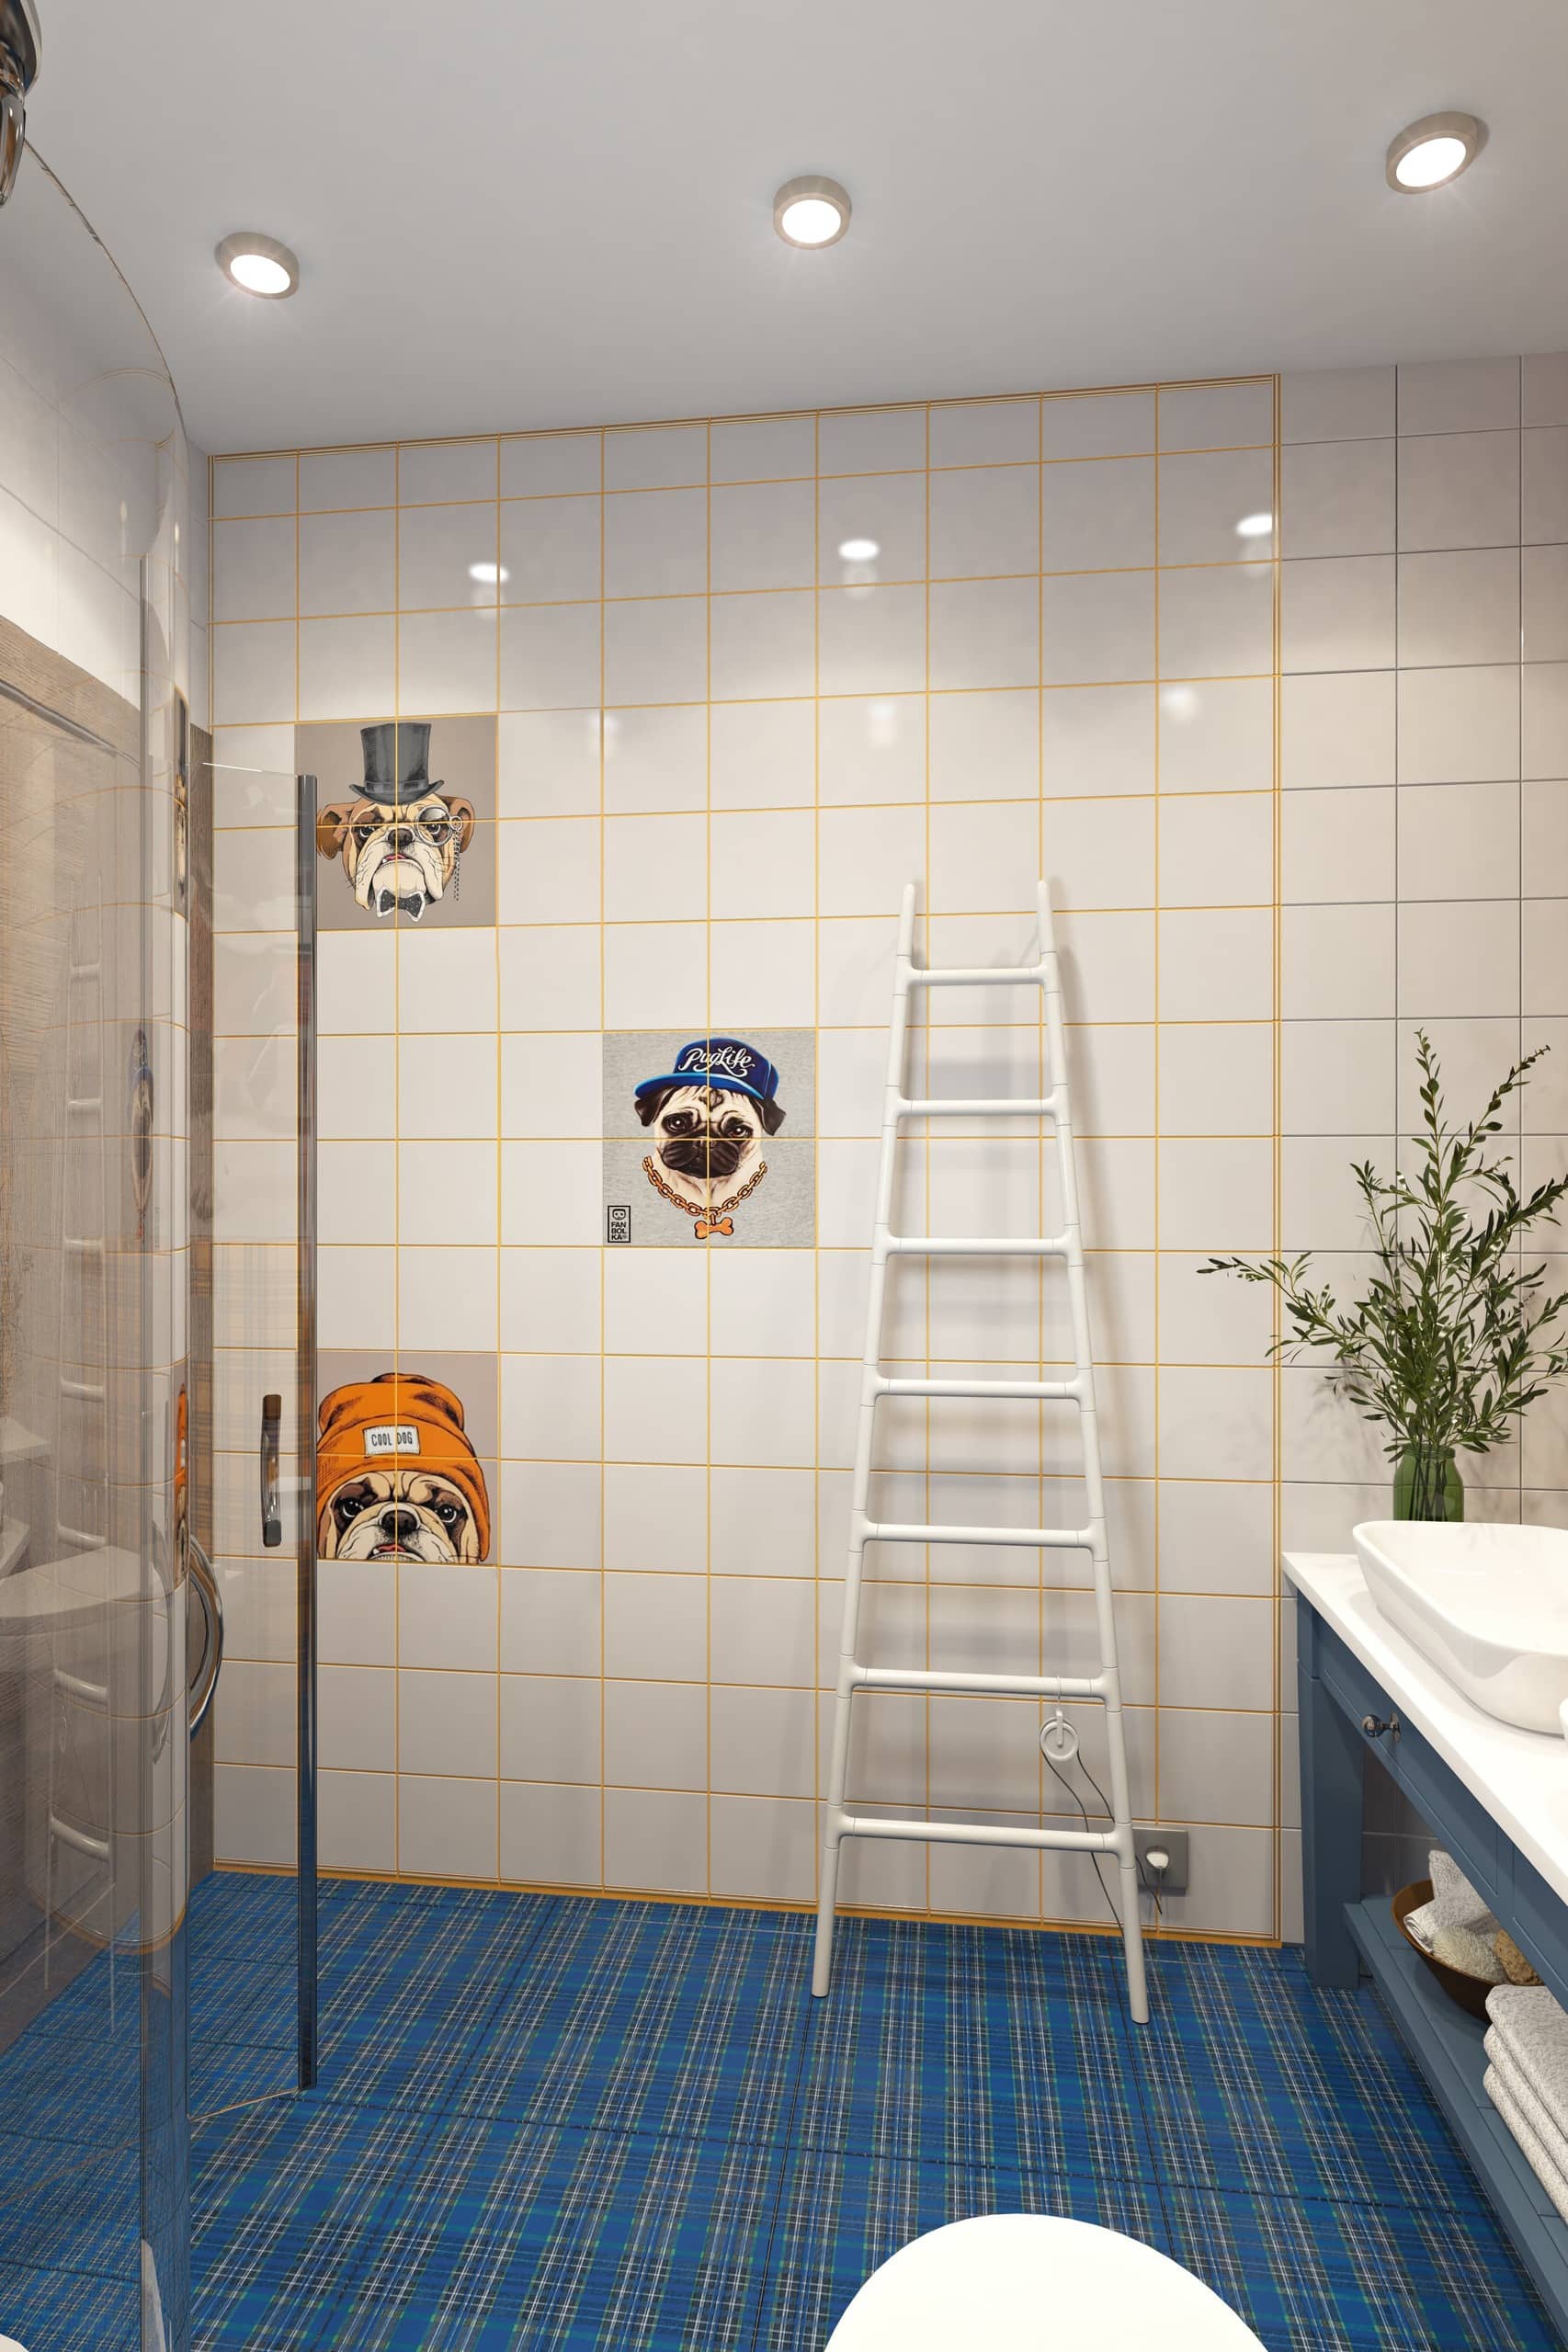 Фото аппликации мопсов на плитках отлично подходят под интерьер ванной комнаты